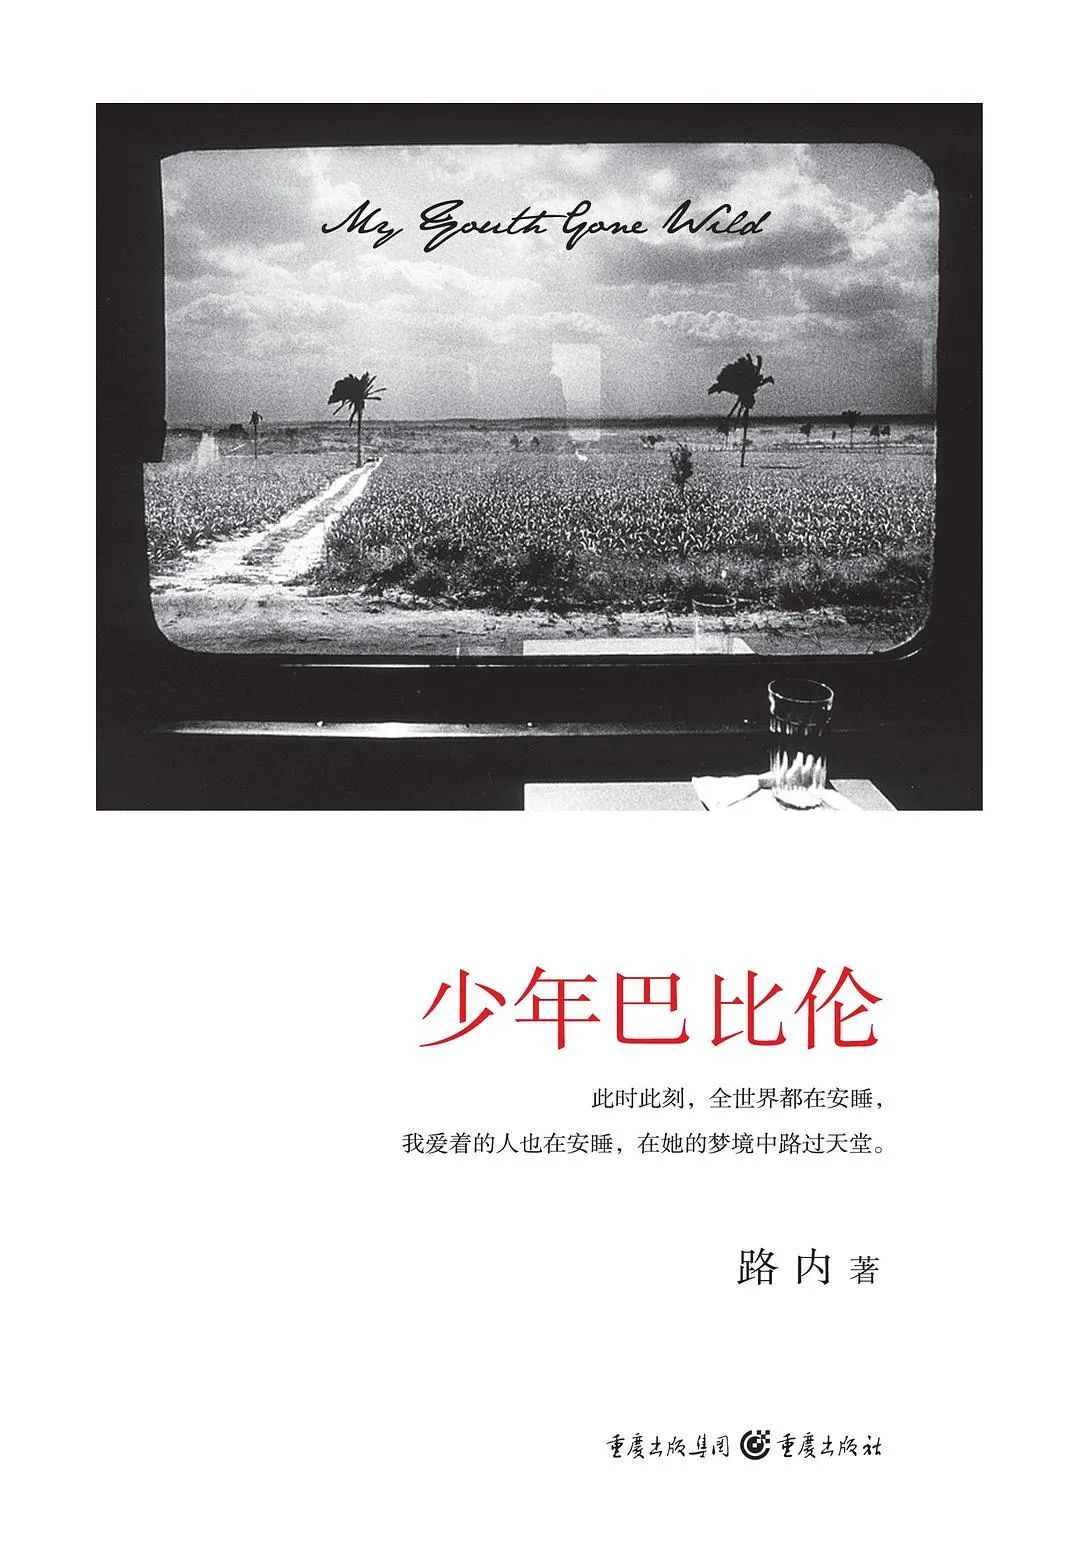 《少年巴比伦》，作者: 路内，版本: 重庆出版社 2008年8月